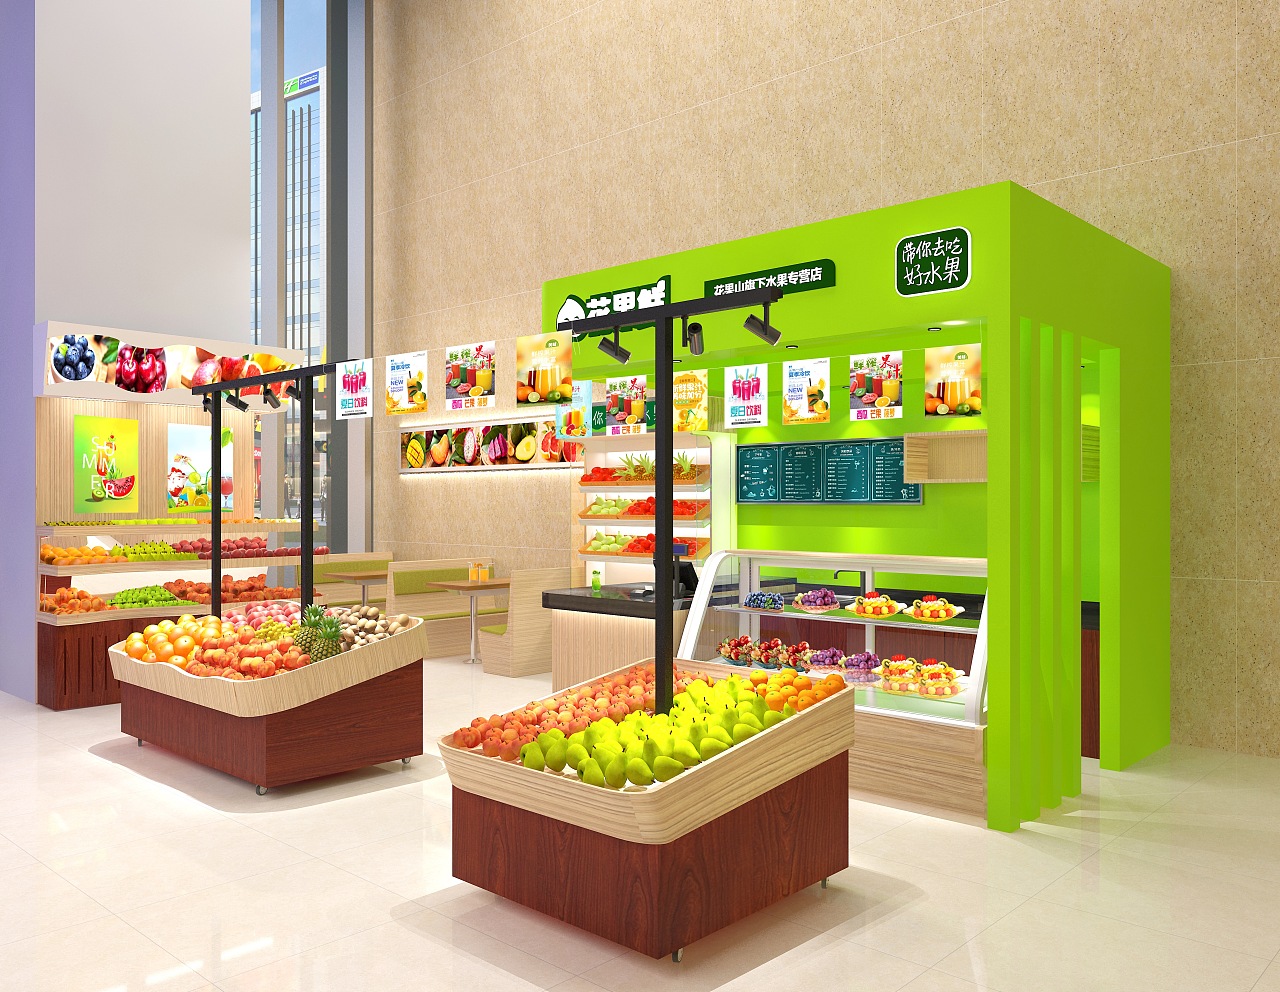 美宜佳连锁超市空间设计效果图 - 设计案例 - 正设计